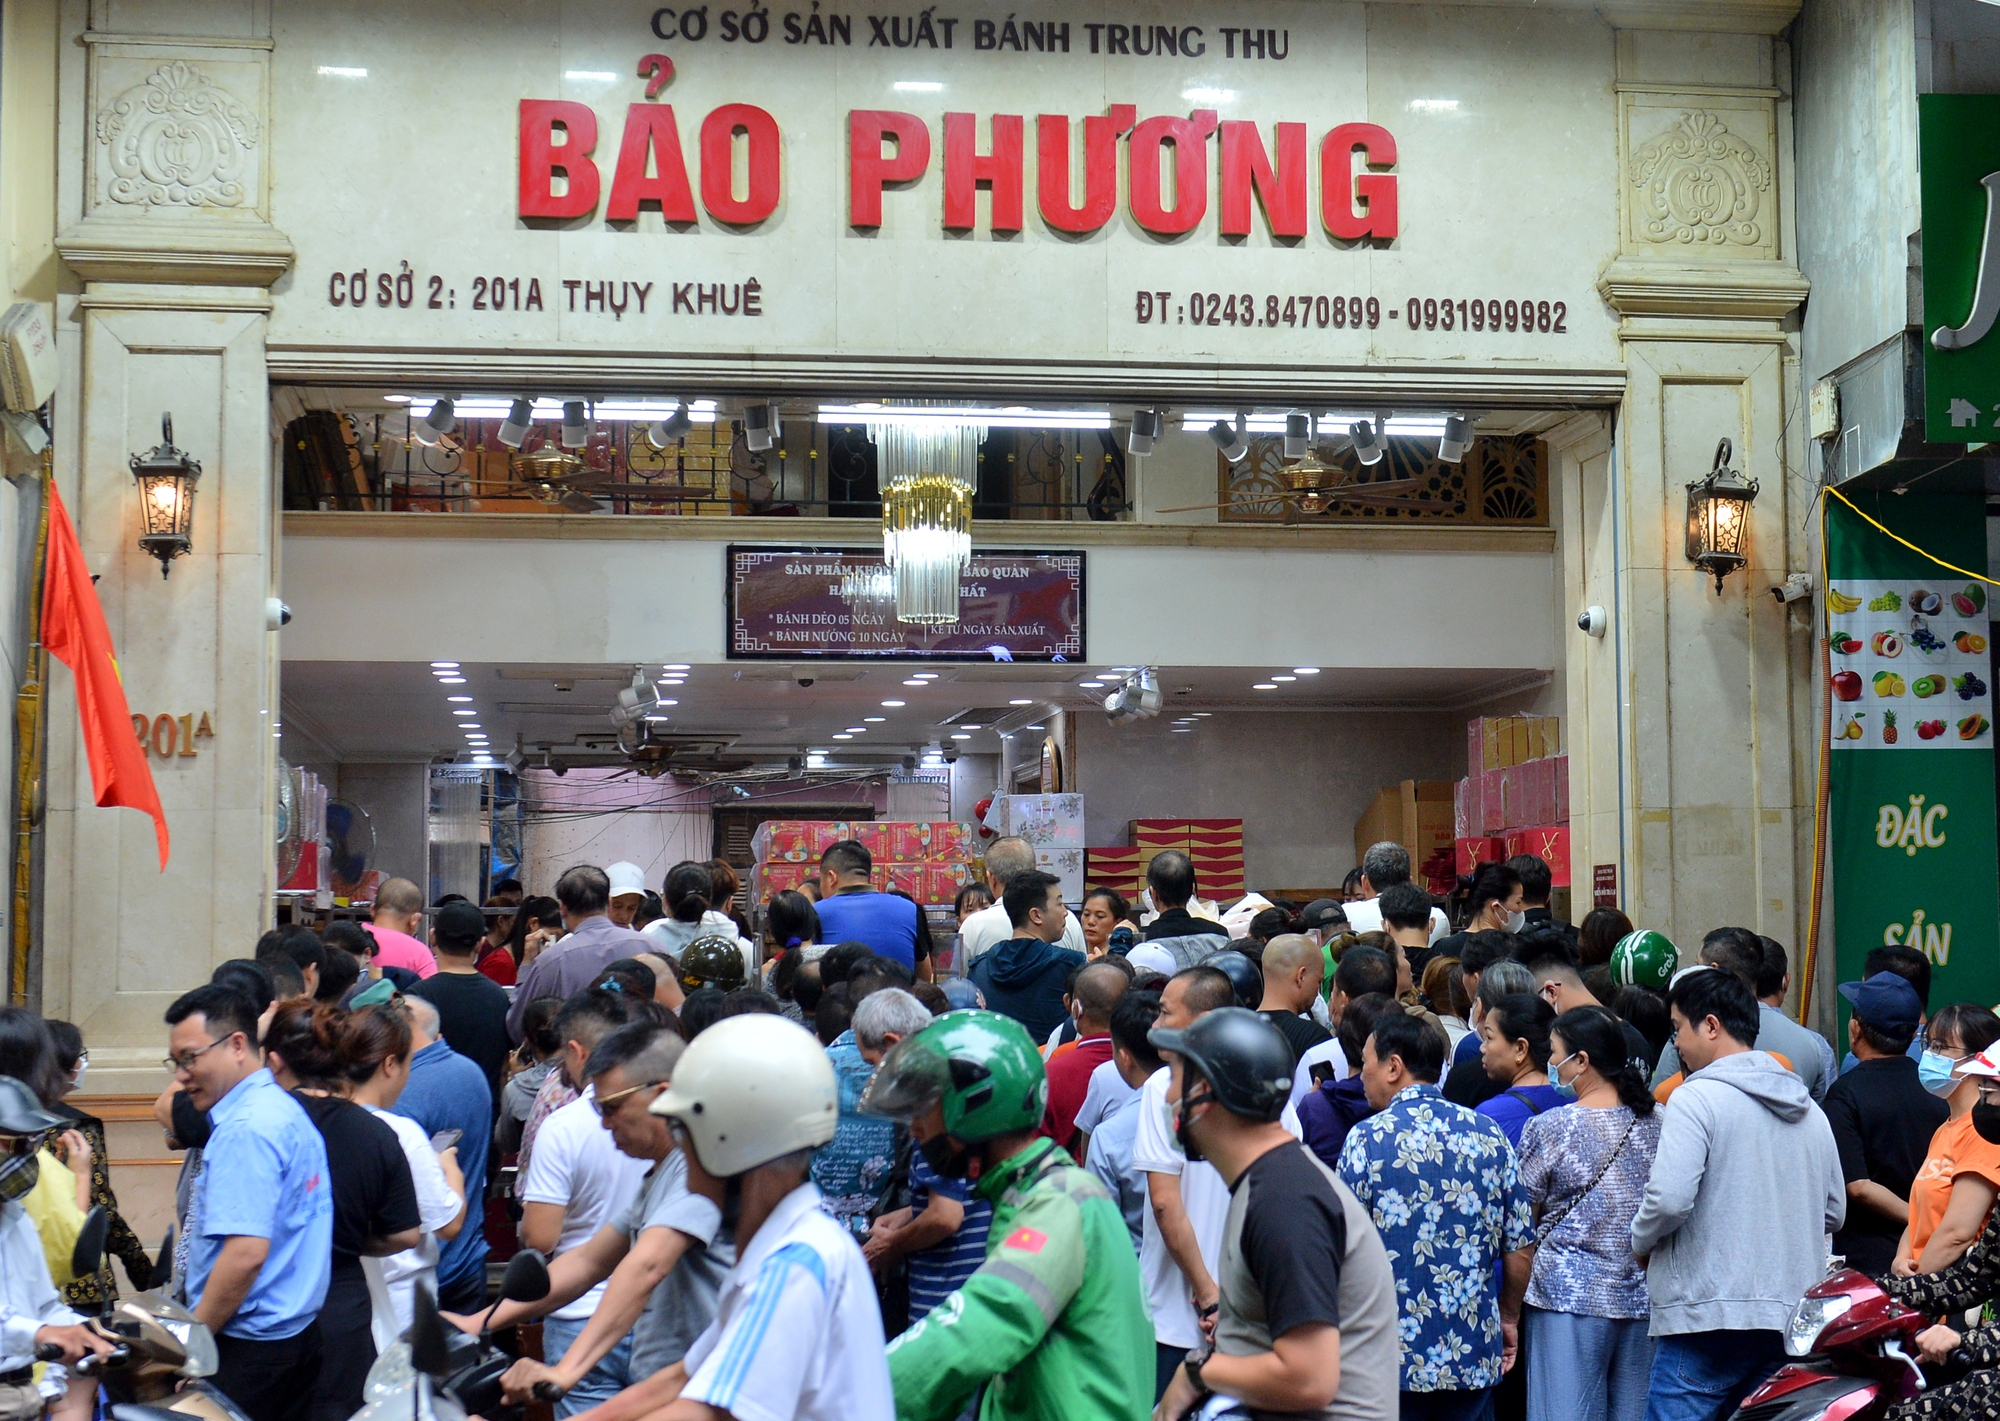 Hà Nội: Người dân xếp hàng dài, chờ cả tiếng đợi mua bánh trung thu truyền thống - Ảnh 3.